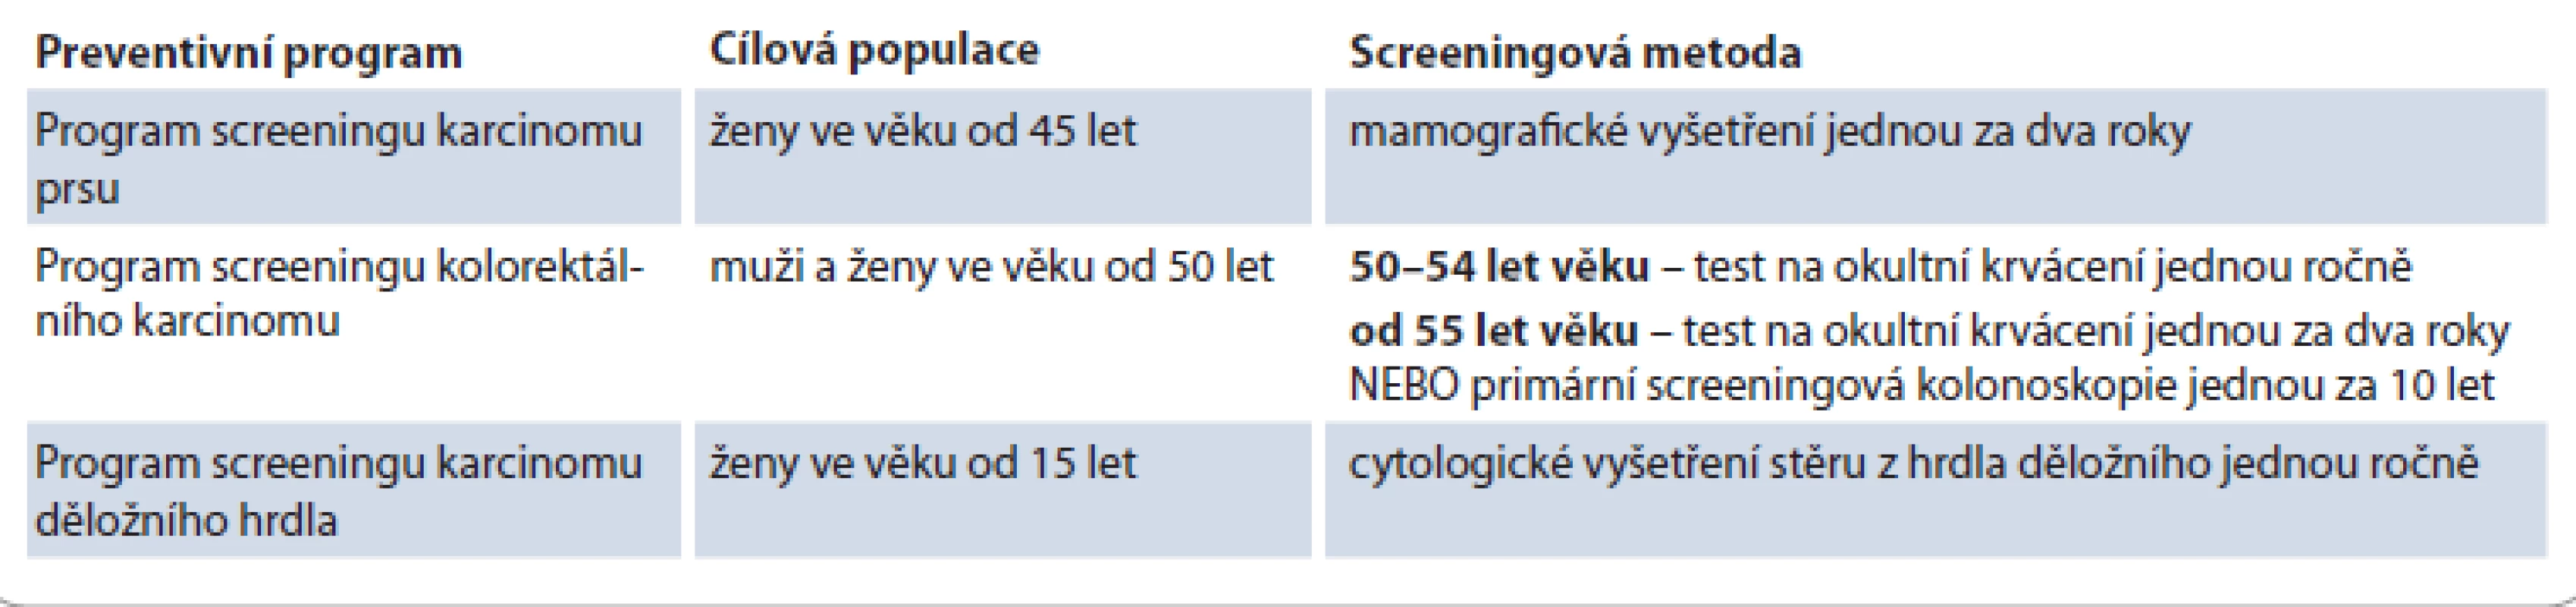 Programy pro screening nádorových onemocnění dle doporučení Rady EU a jejich dostupnost v ČR.